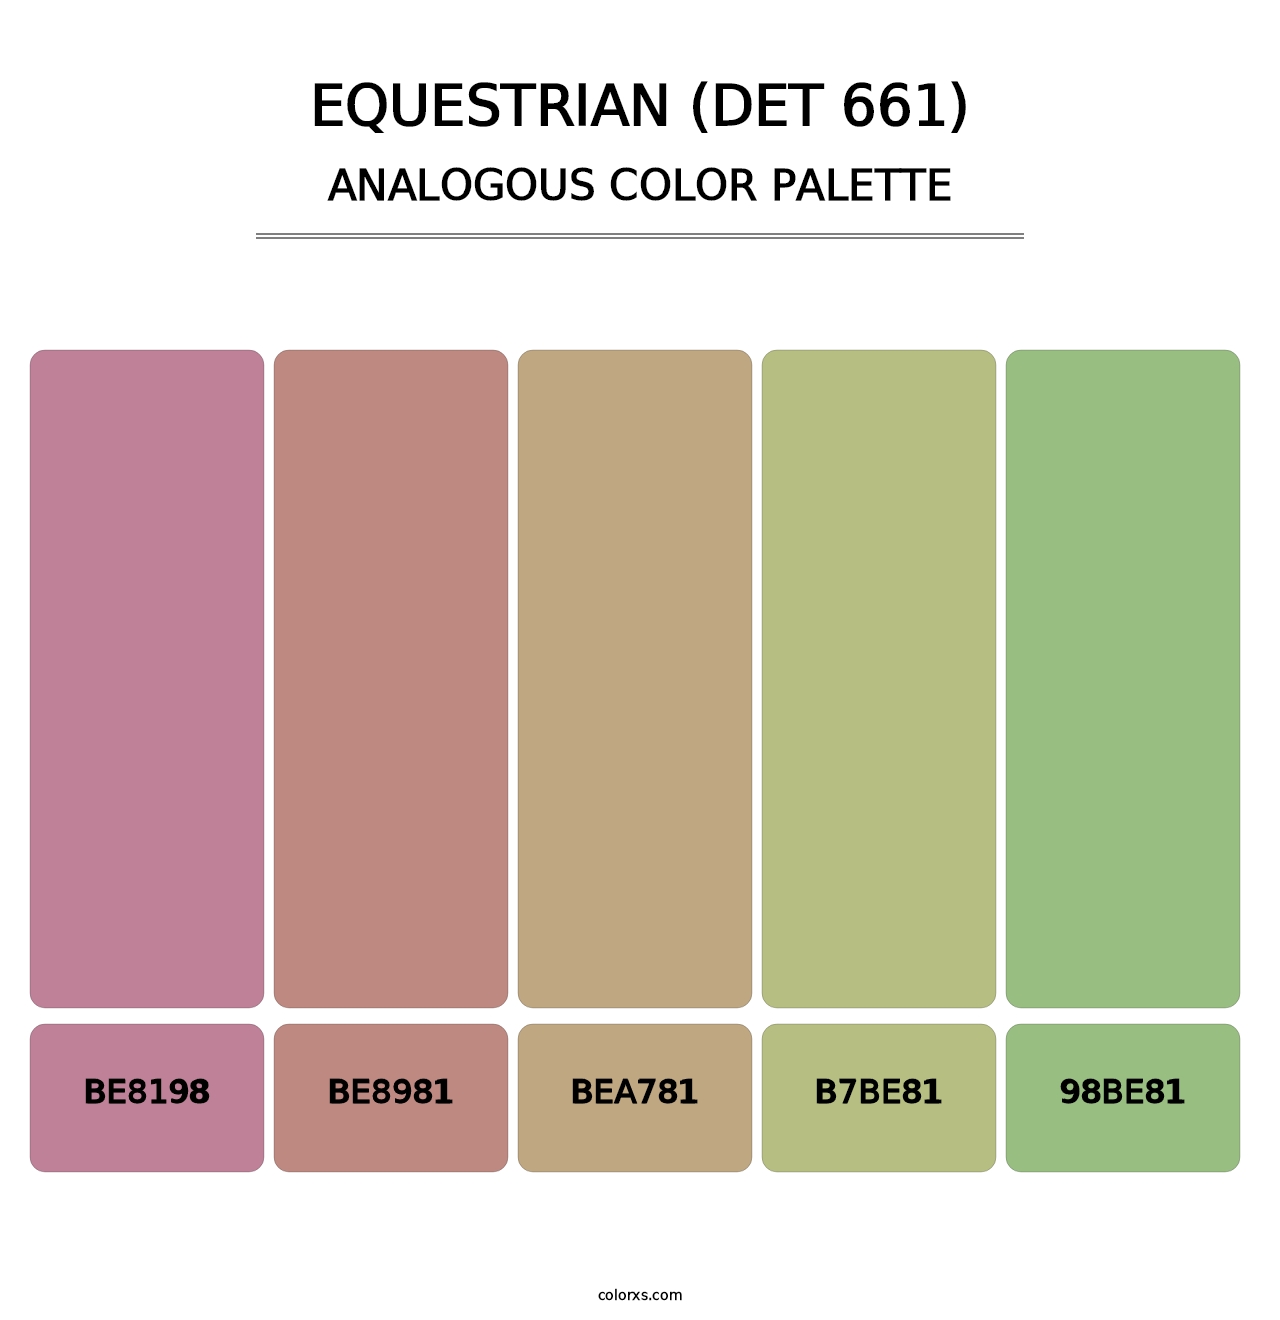 Equestrian (DET 661) - Analogous Color Palette